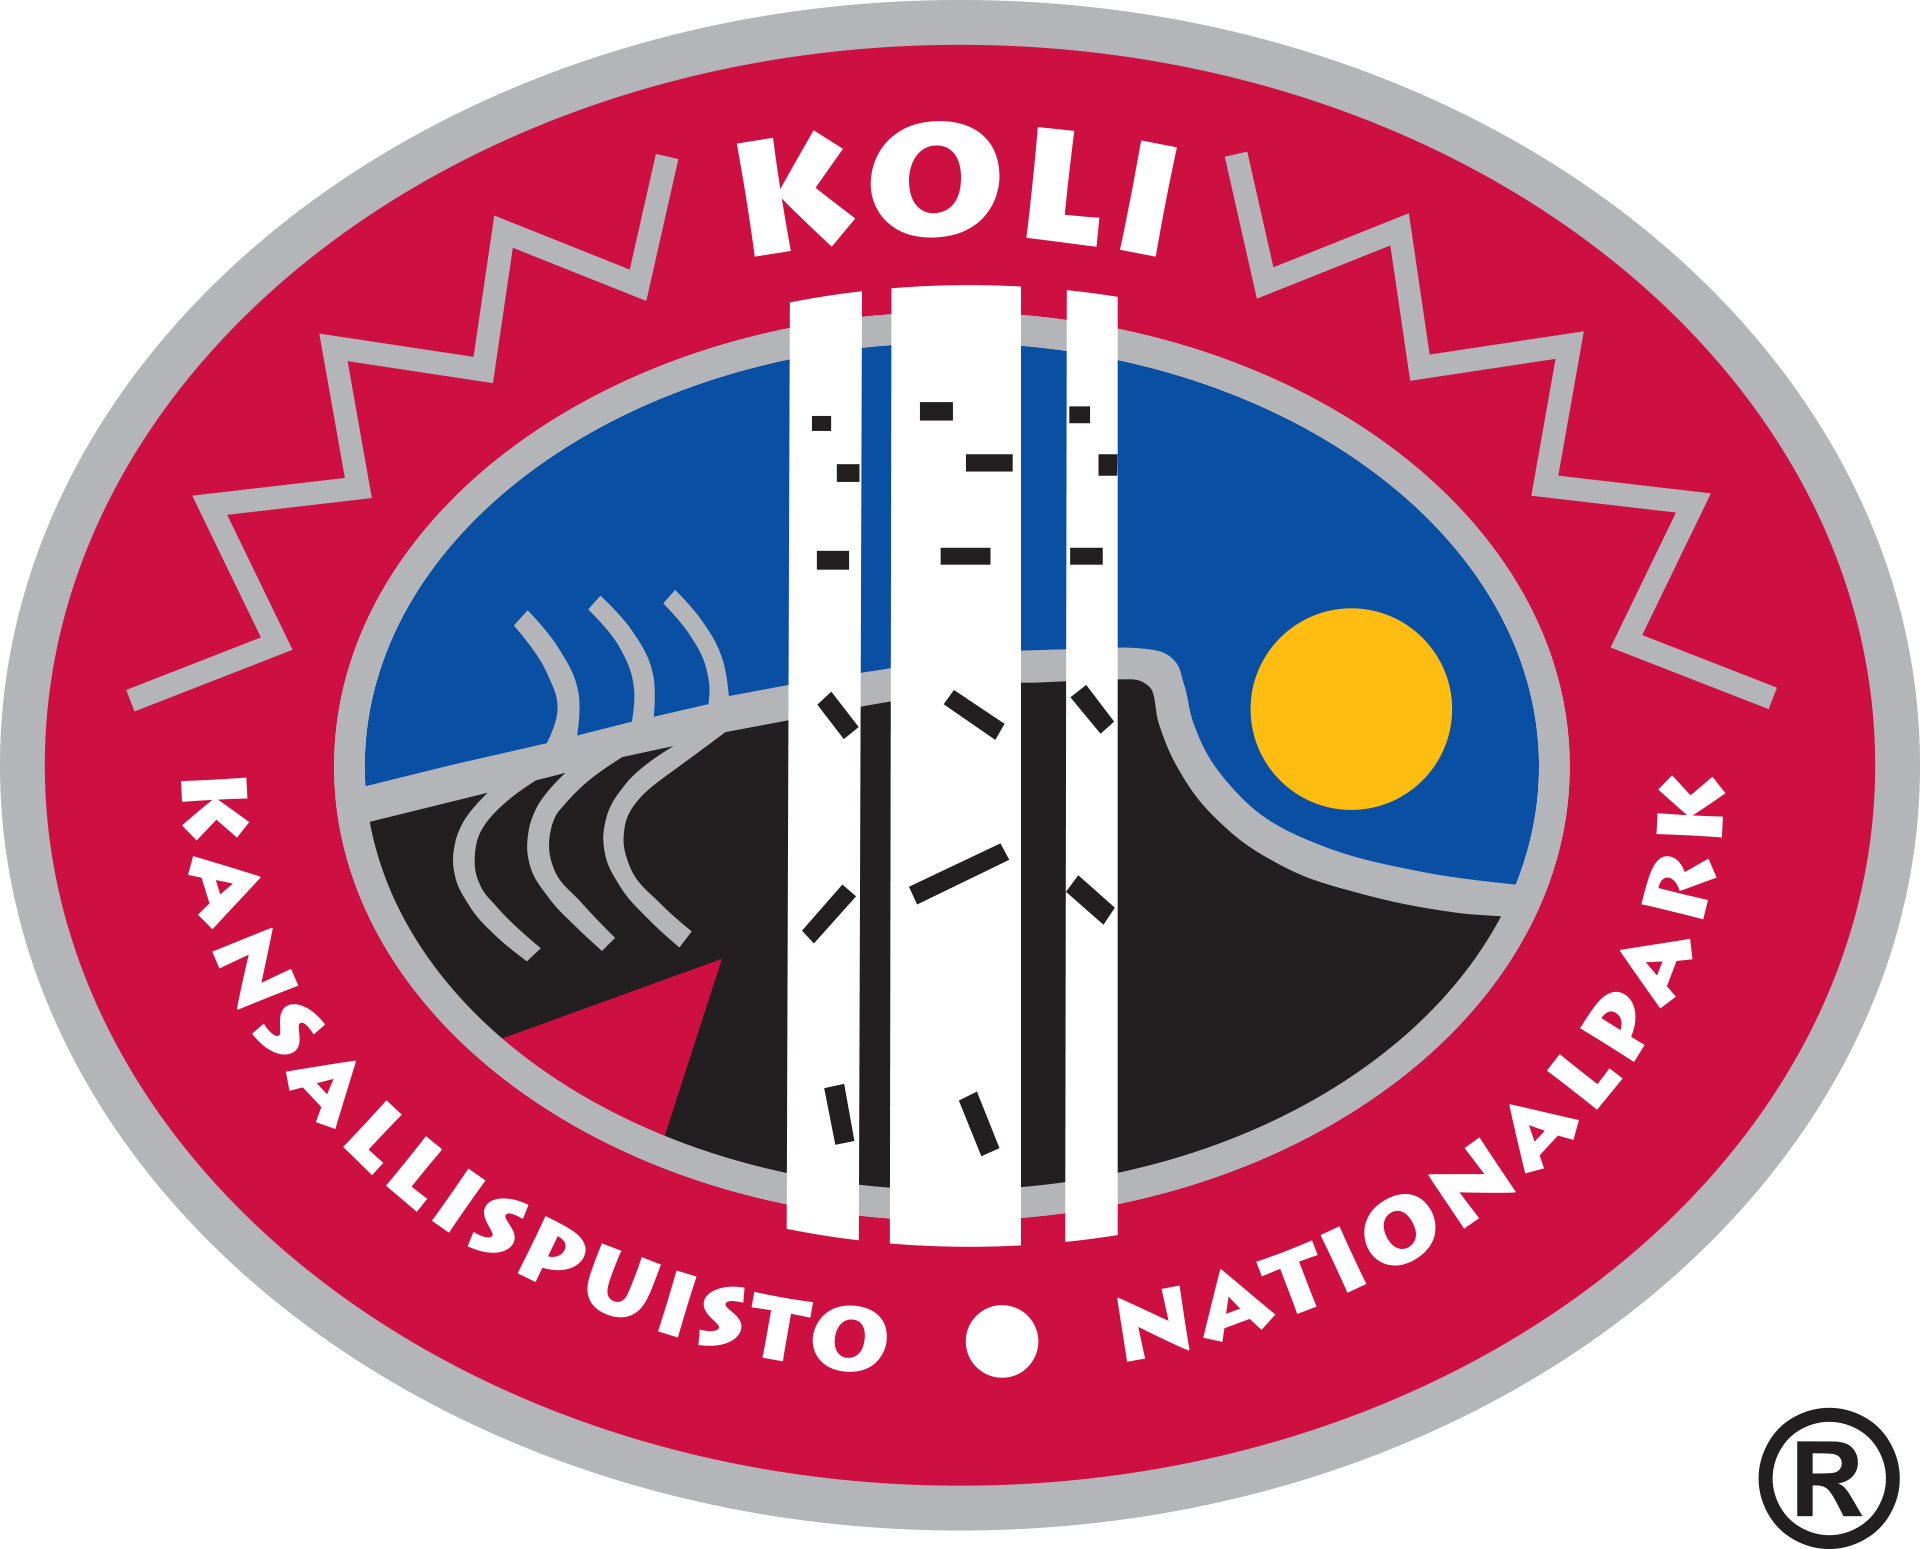 Kolin_kansallispuiston_tunnus_-_kaskikoivikko._Logo..png